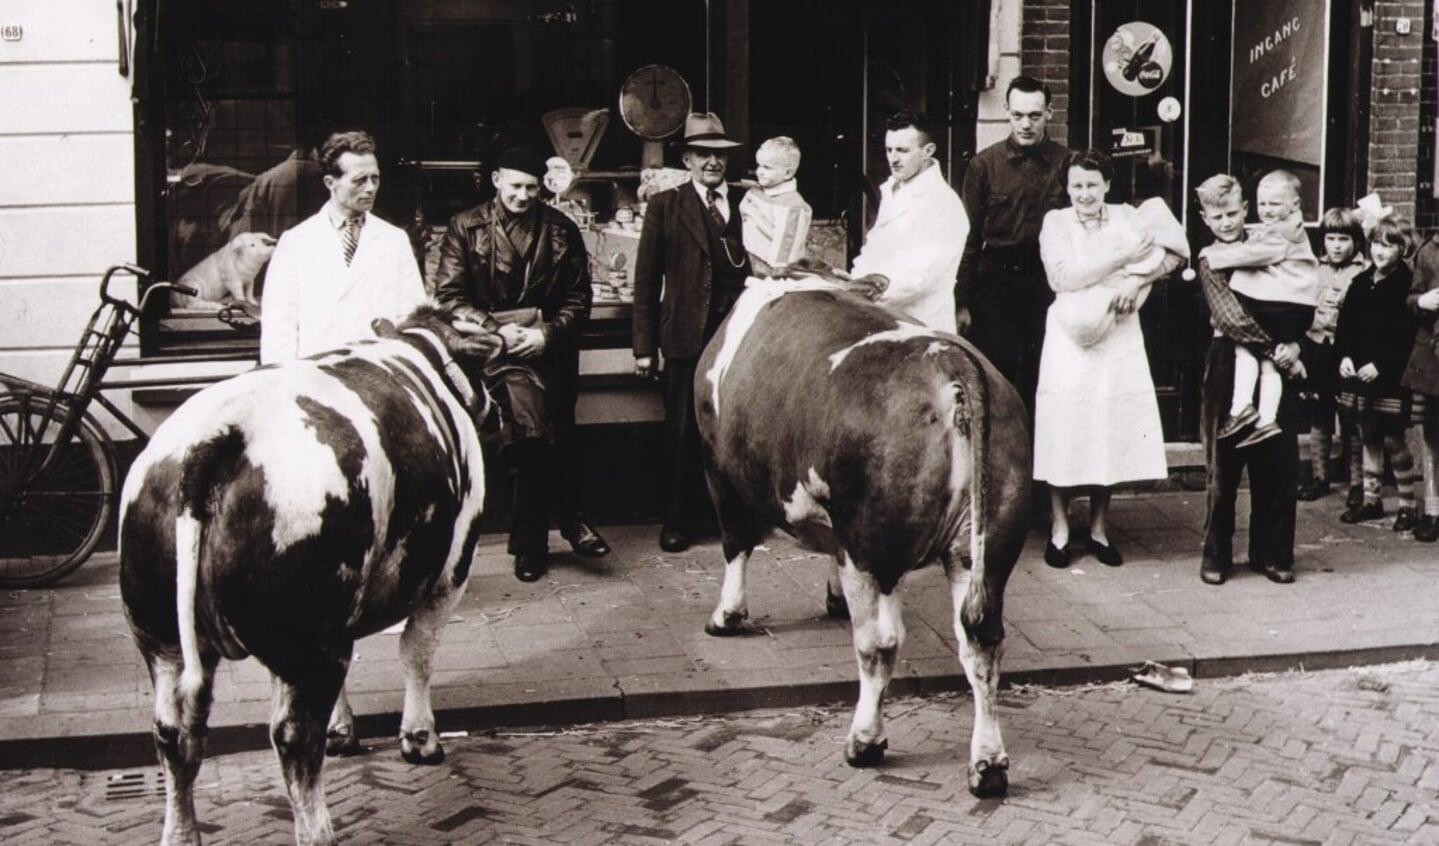 De koeien trokken vroeger veel bekijks in de Dorpsstraat voordat zij geslacht werden.